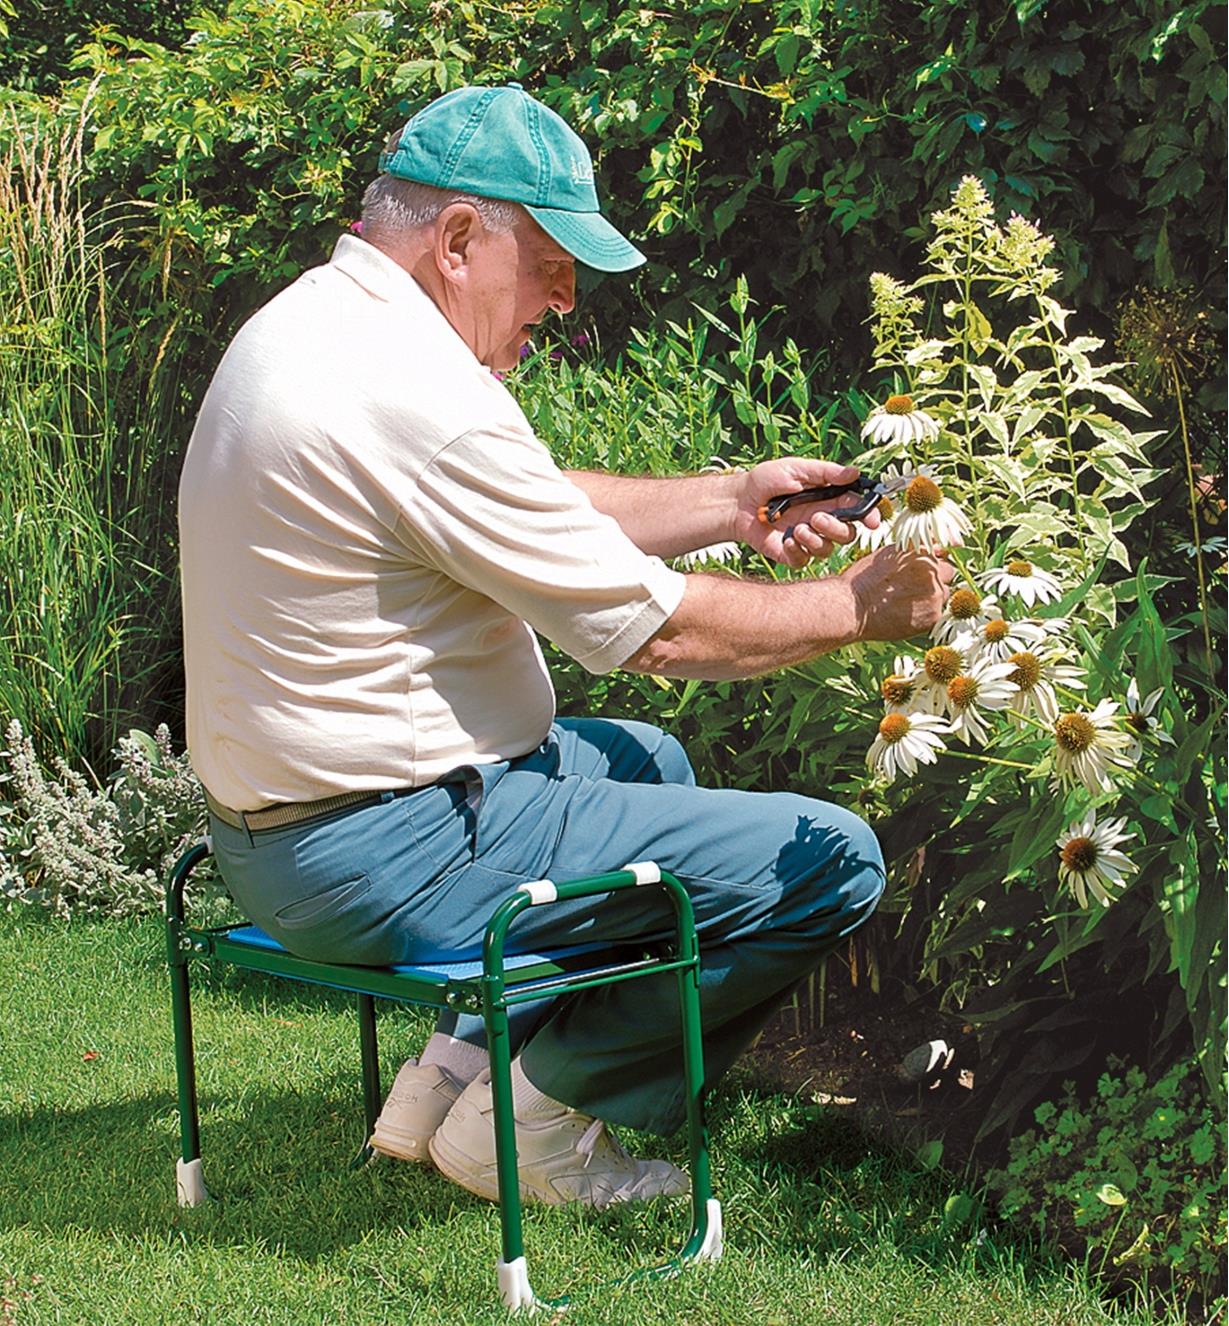 Homme assis sur un agenouilloir-tabouret pliant et coupant des fleurs